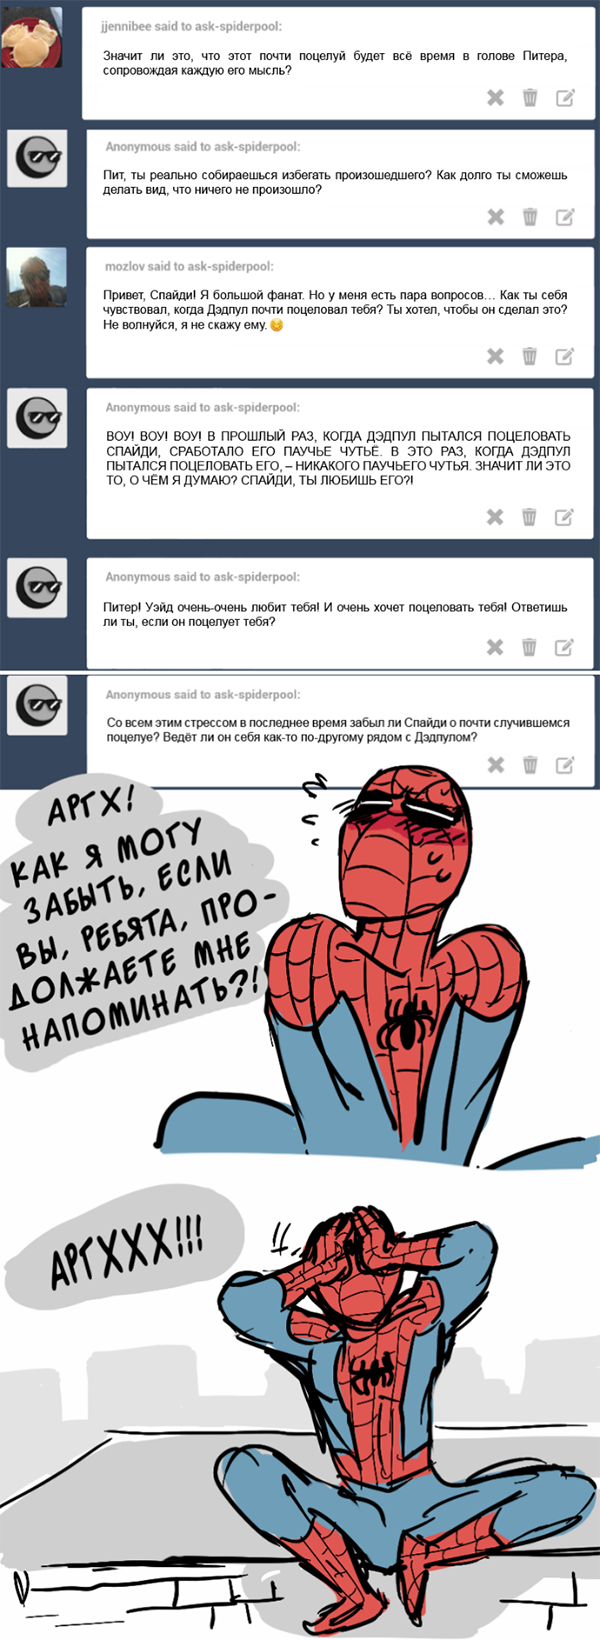 Комикс Спросите Человека-паука и Дэдпула (Ask Spiderpool): выпуск №220